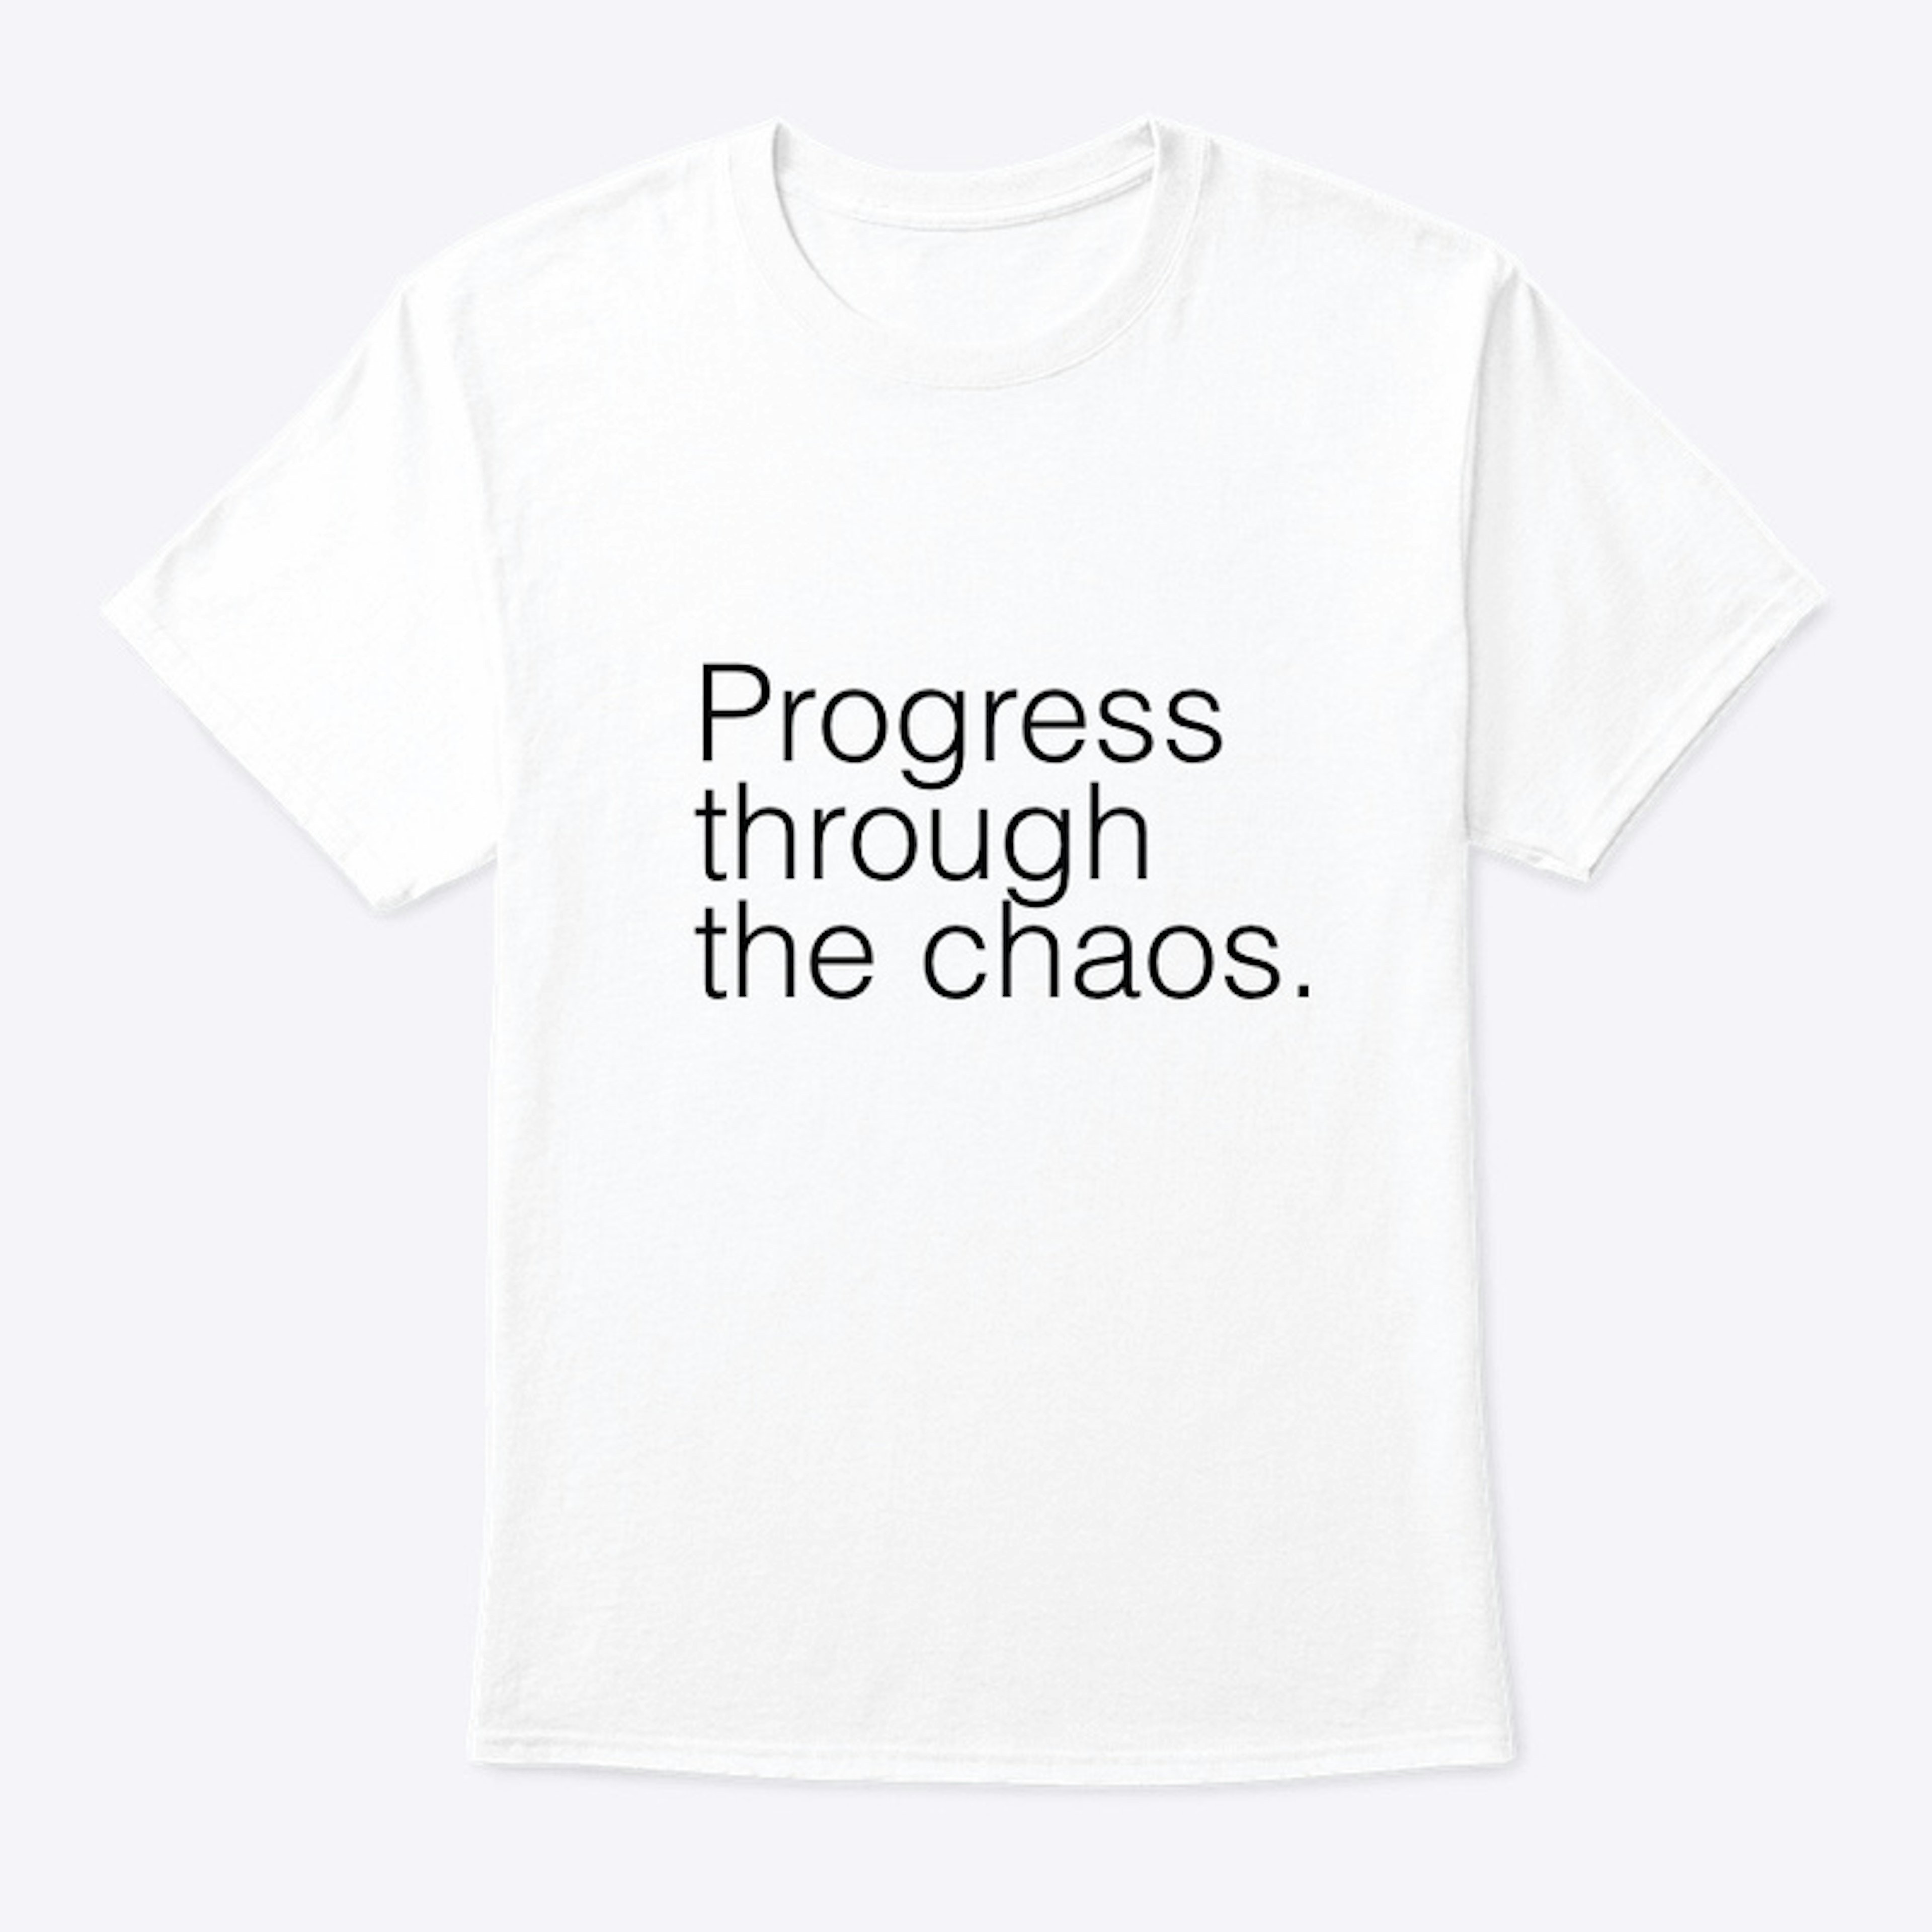 Progress through the chaos